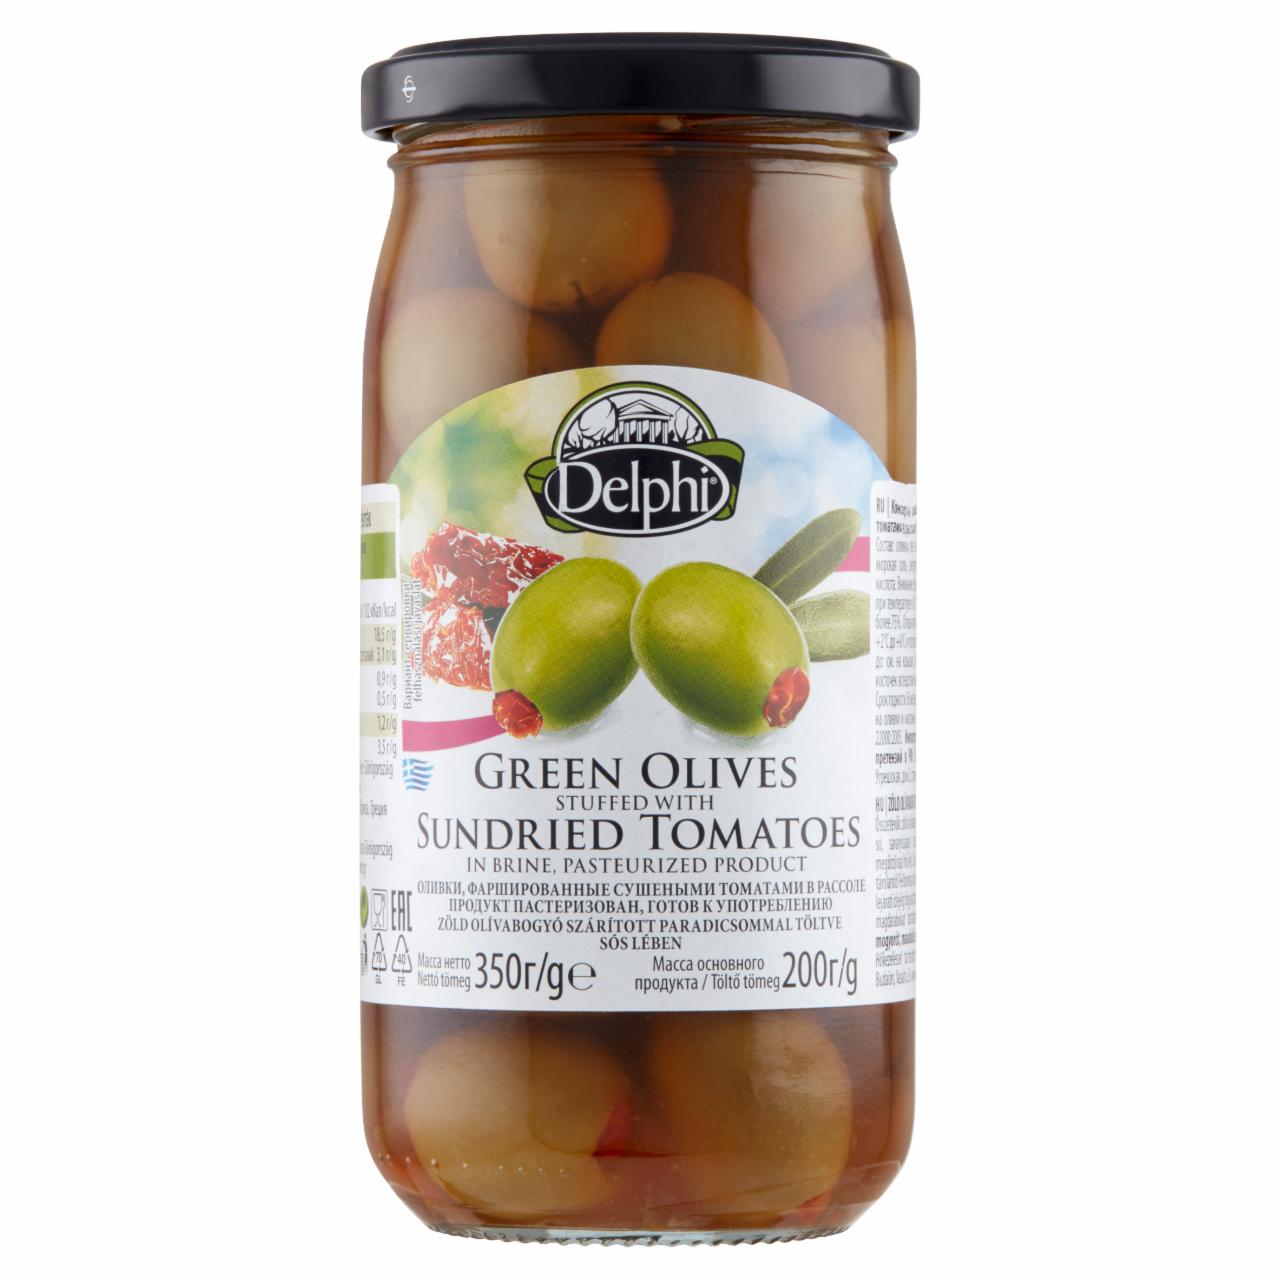 Képek - Delphi zöld olívabogyó szárított paradicsommal töltve sós lében 350 g